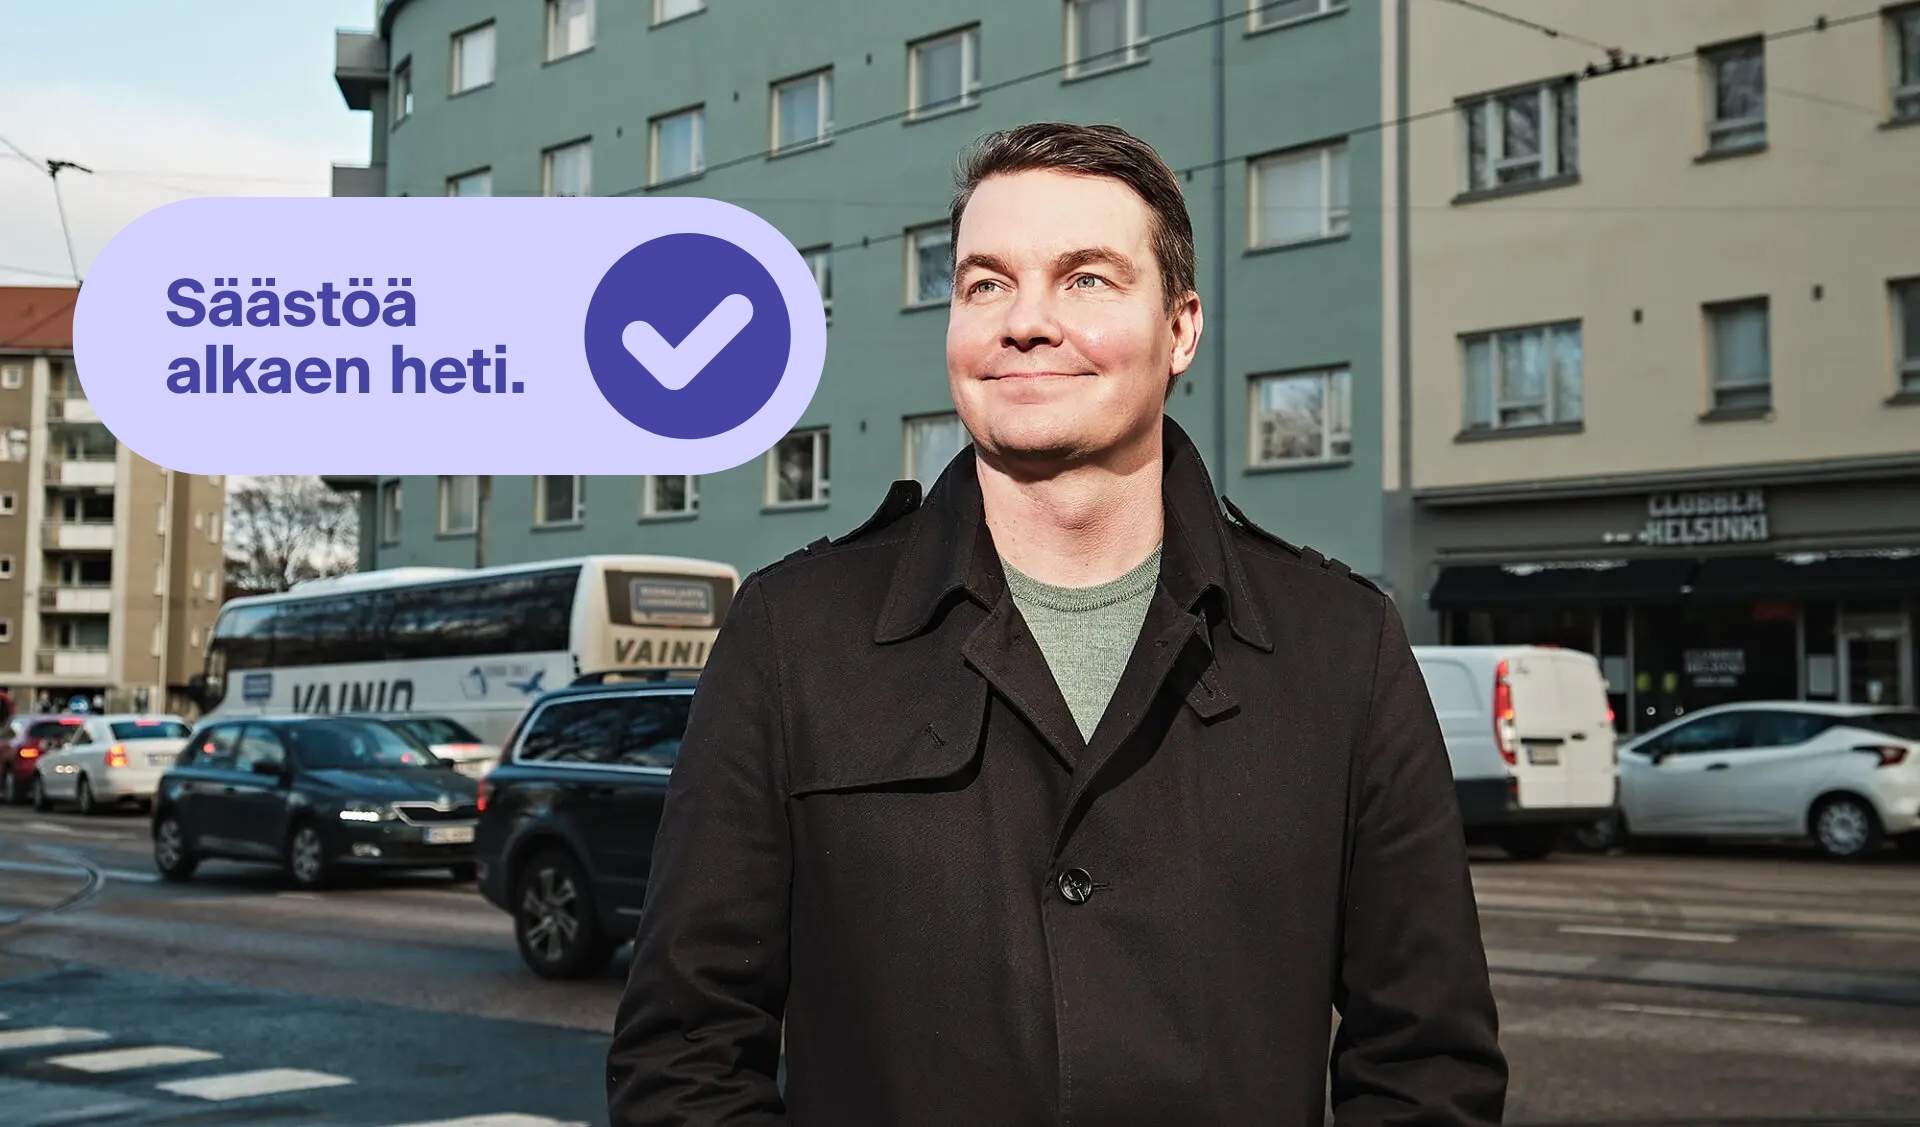 Henkilö Helsingin kadulla. Taustalla liikennettä. Kuvan päällä täppi, jossa lukee Säästöä alkaen heti ja check-merkki.